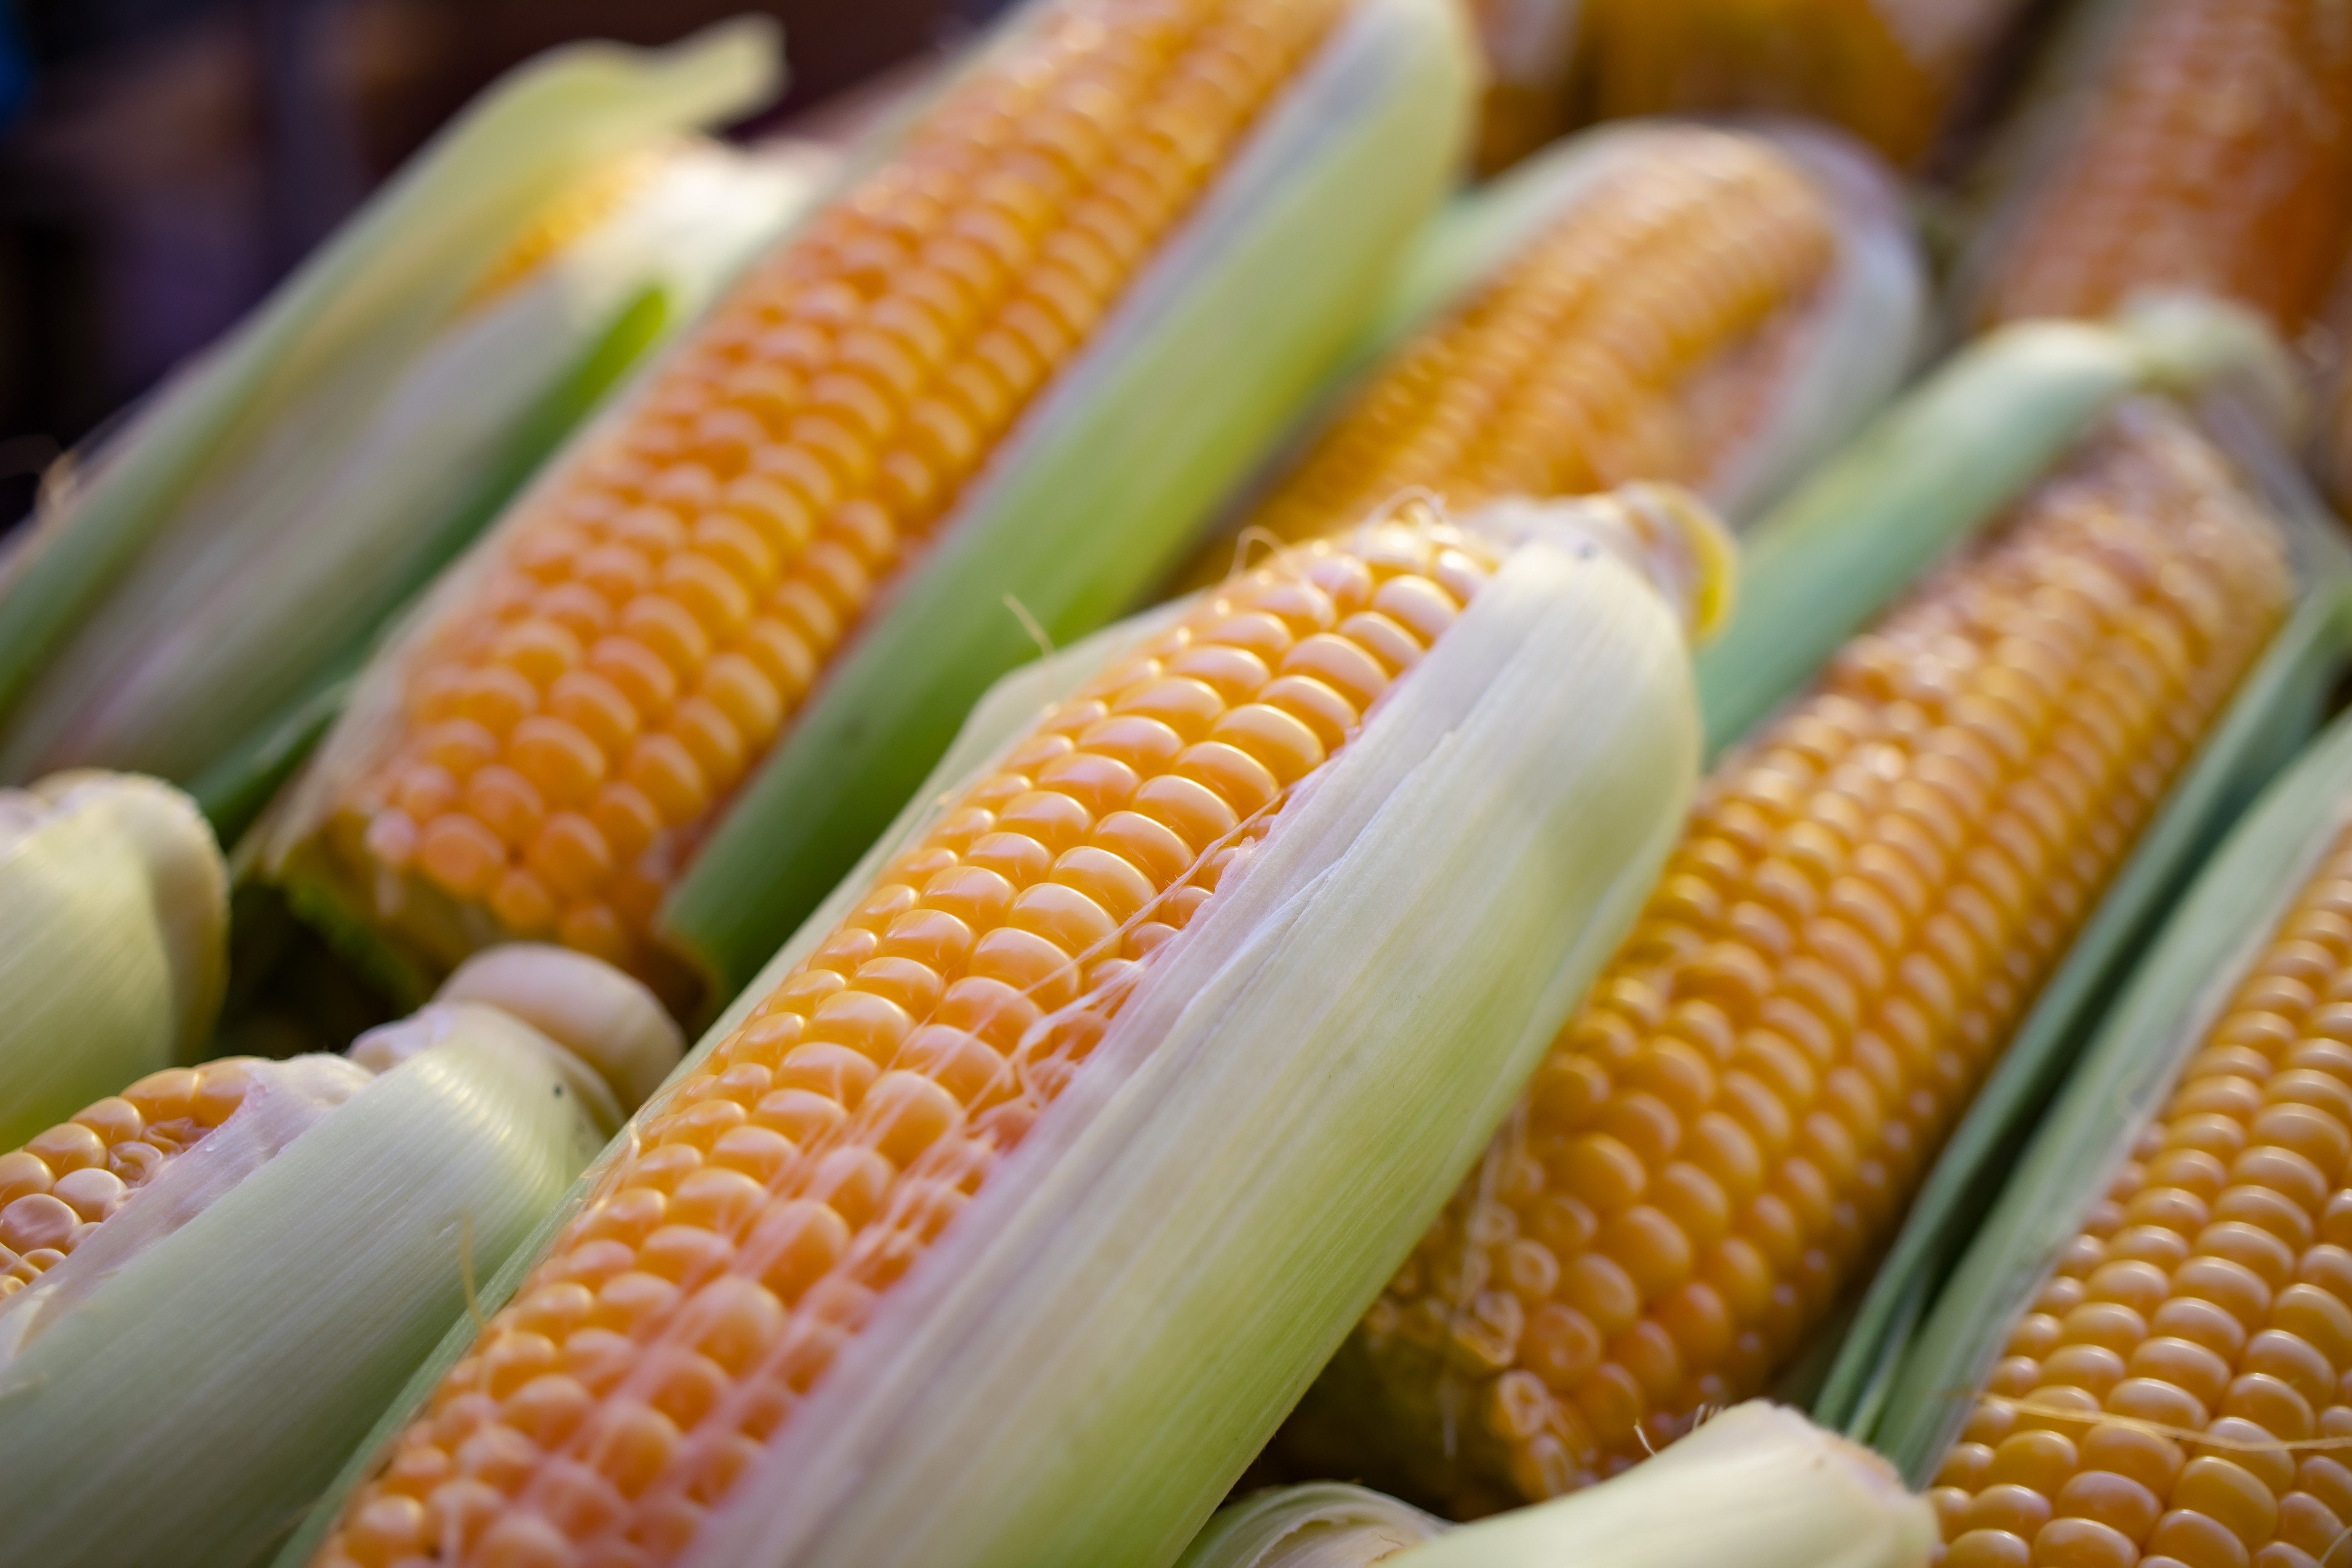 Jak wybrać kwalifikowany materiał siewny kukurydzy? AGROSKŁAD Sp. z o.o.